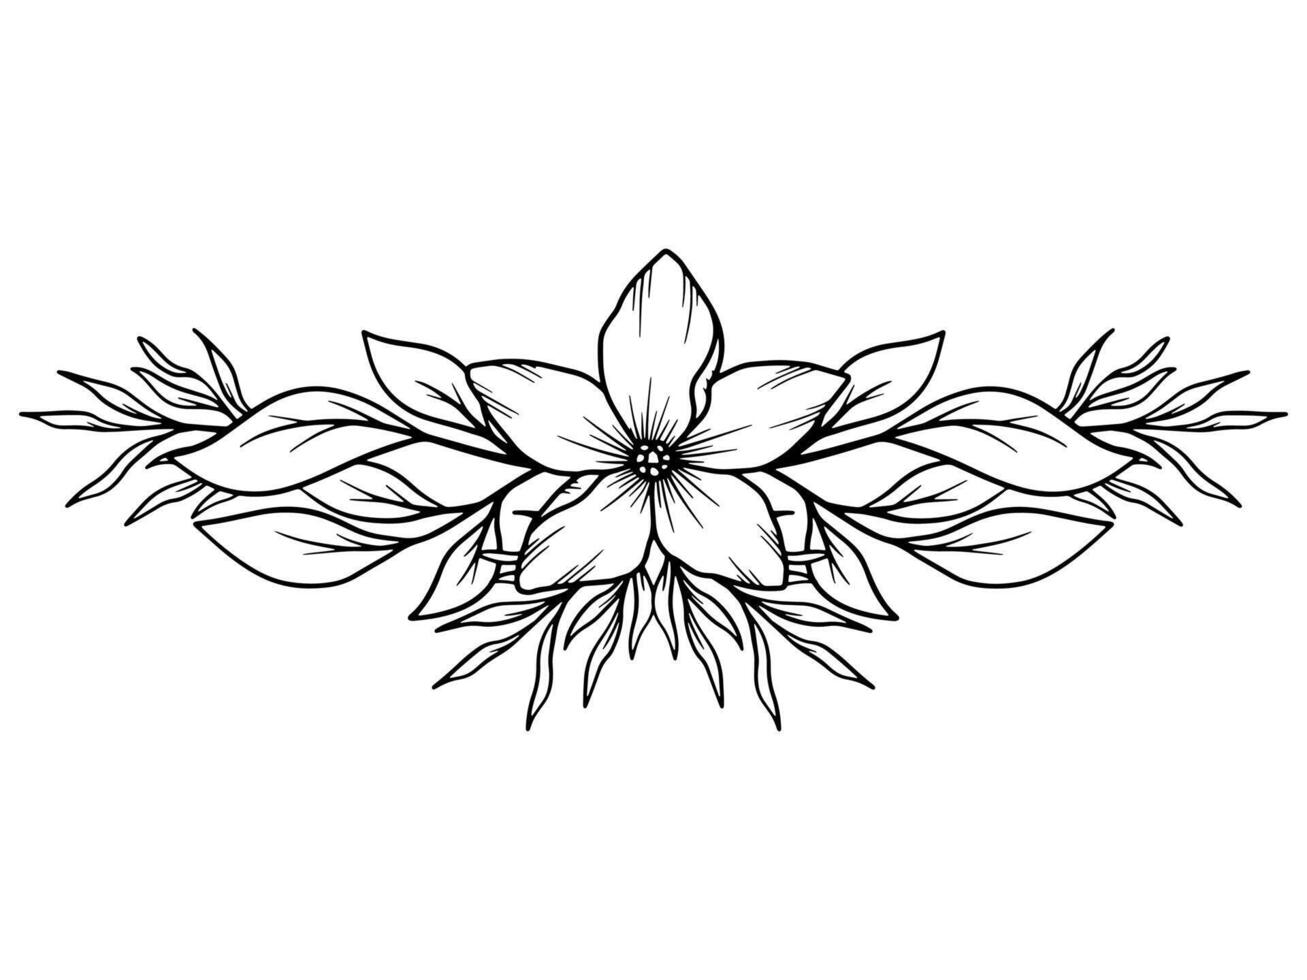 blomma linje konst bukett arrangemang vektor